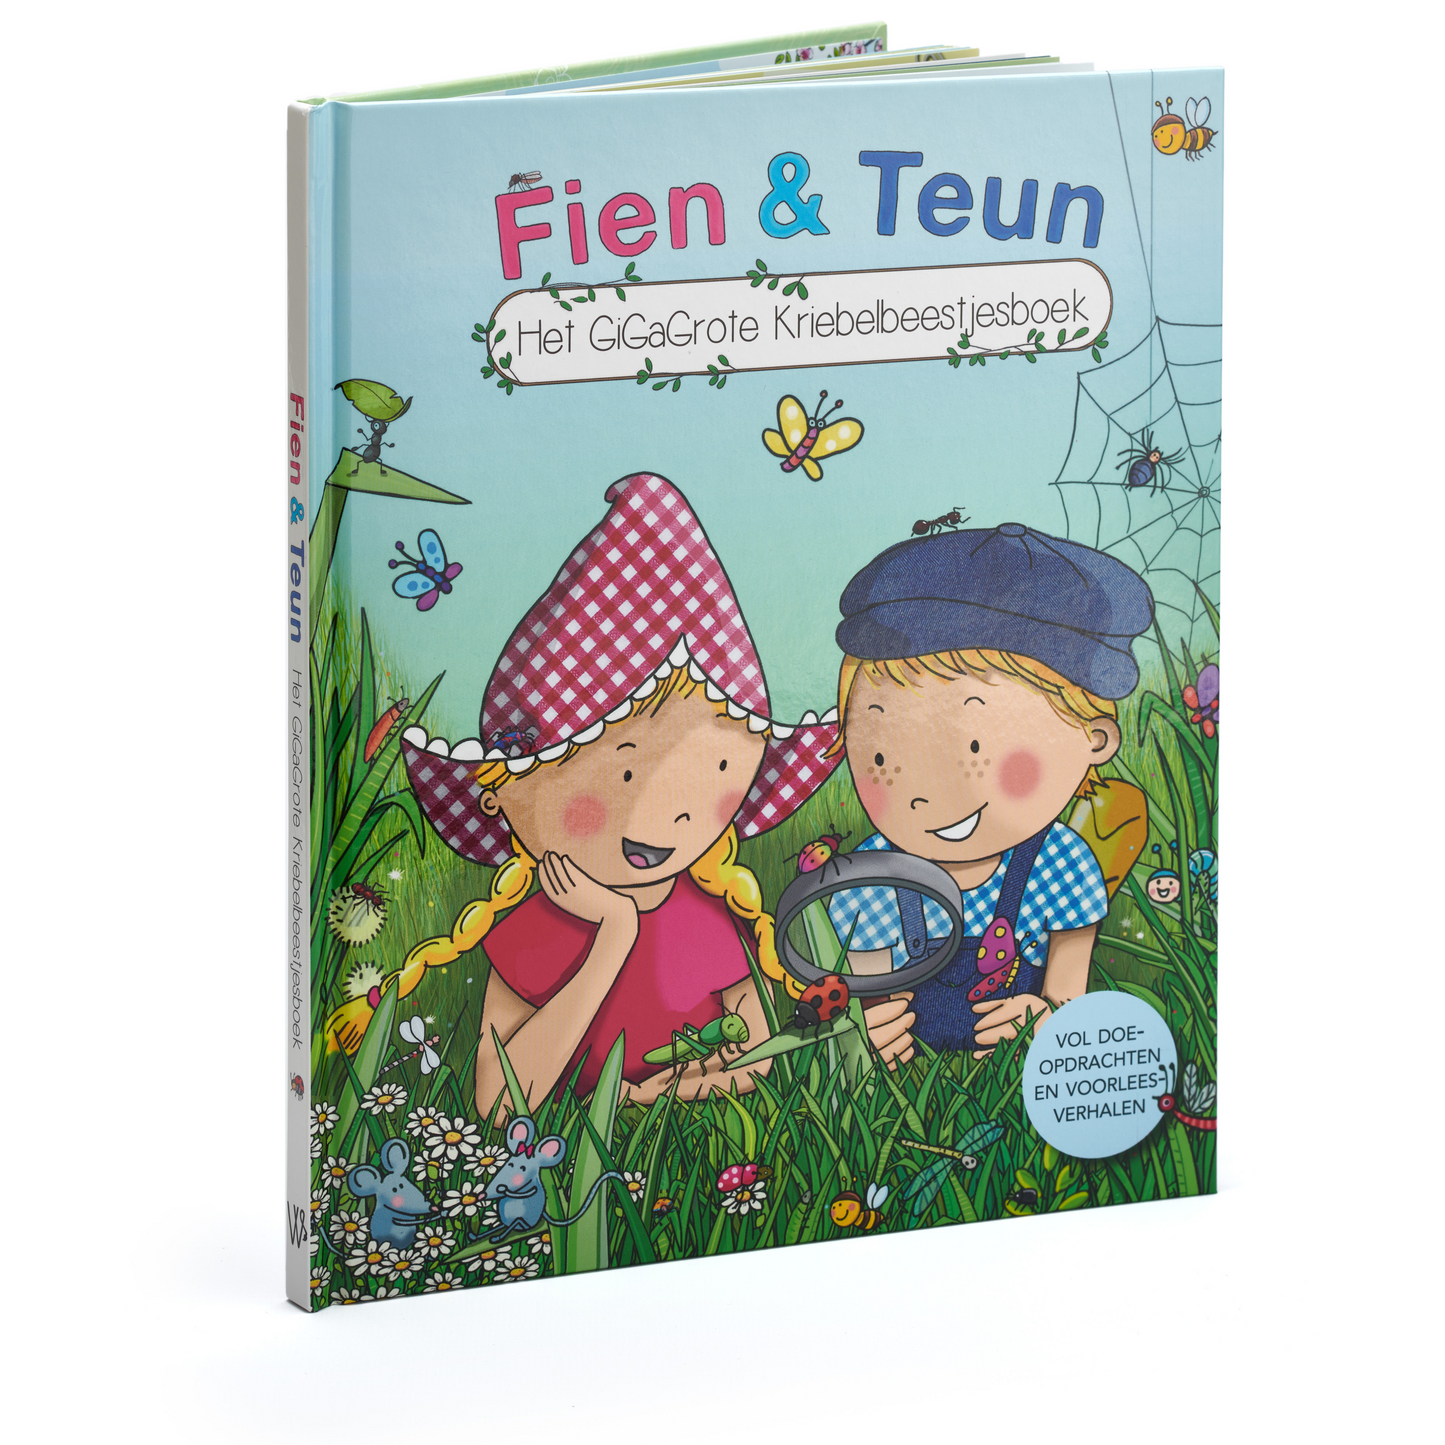 Fien & Teun - Het gigagrote kriebelbeestjesboek